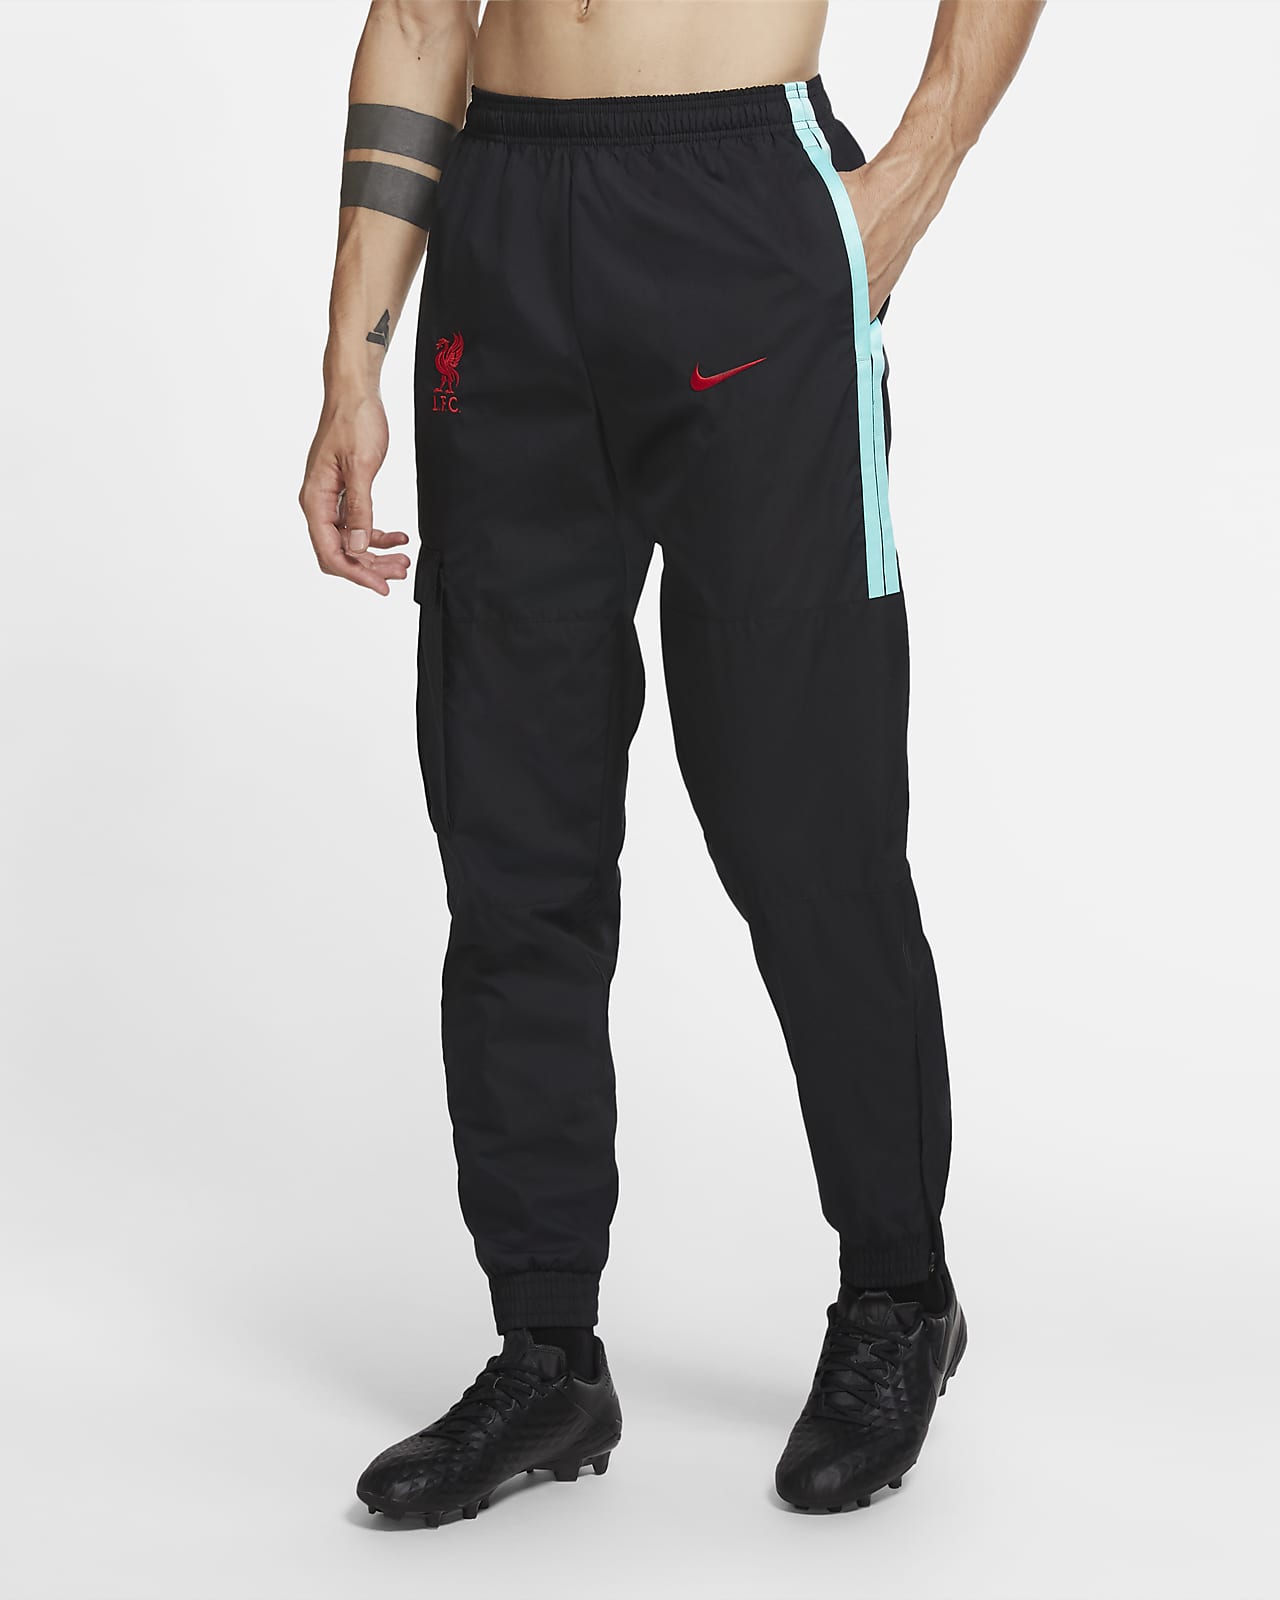 Pantalones de entrenamiento de tejido Woven para hombre Liverpool FC. Nike .com